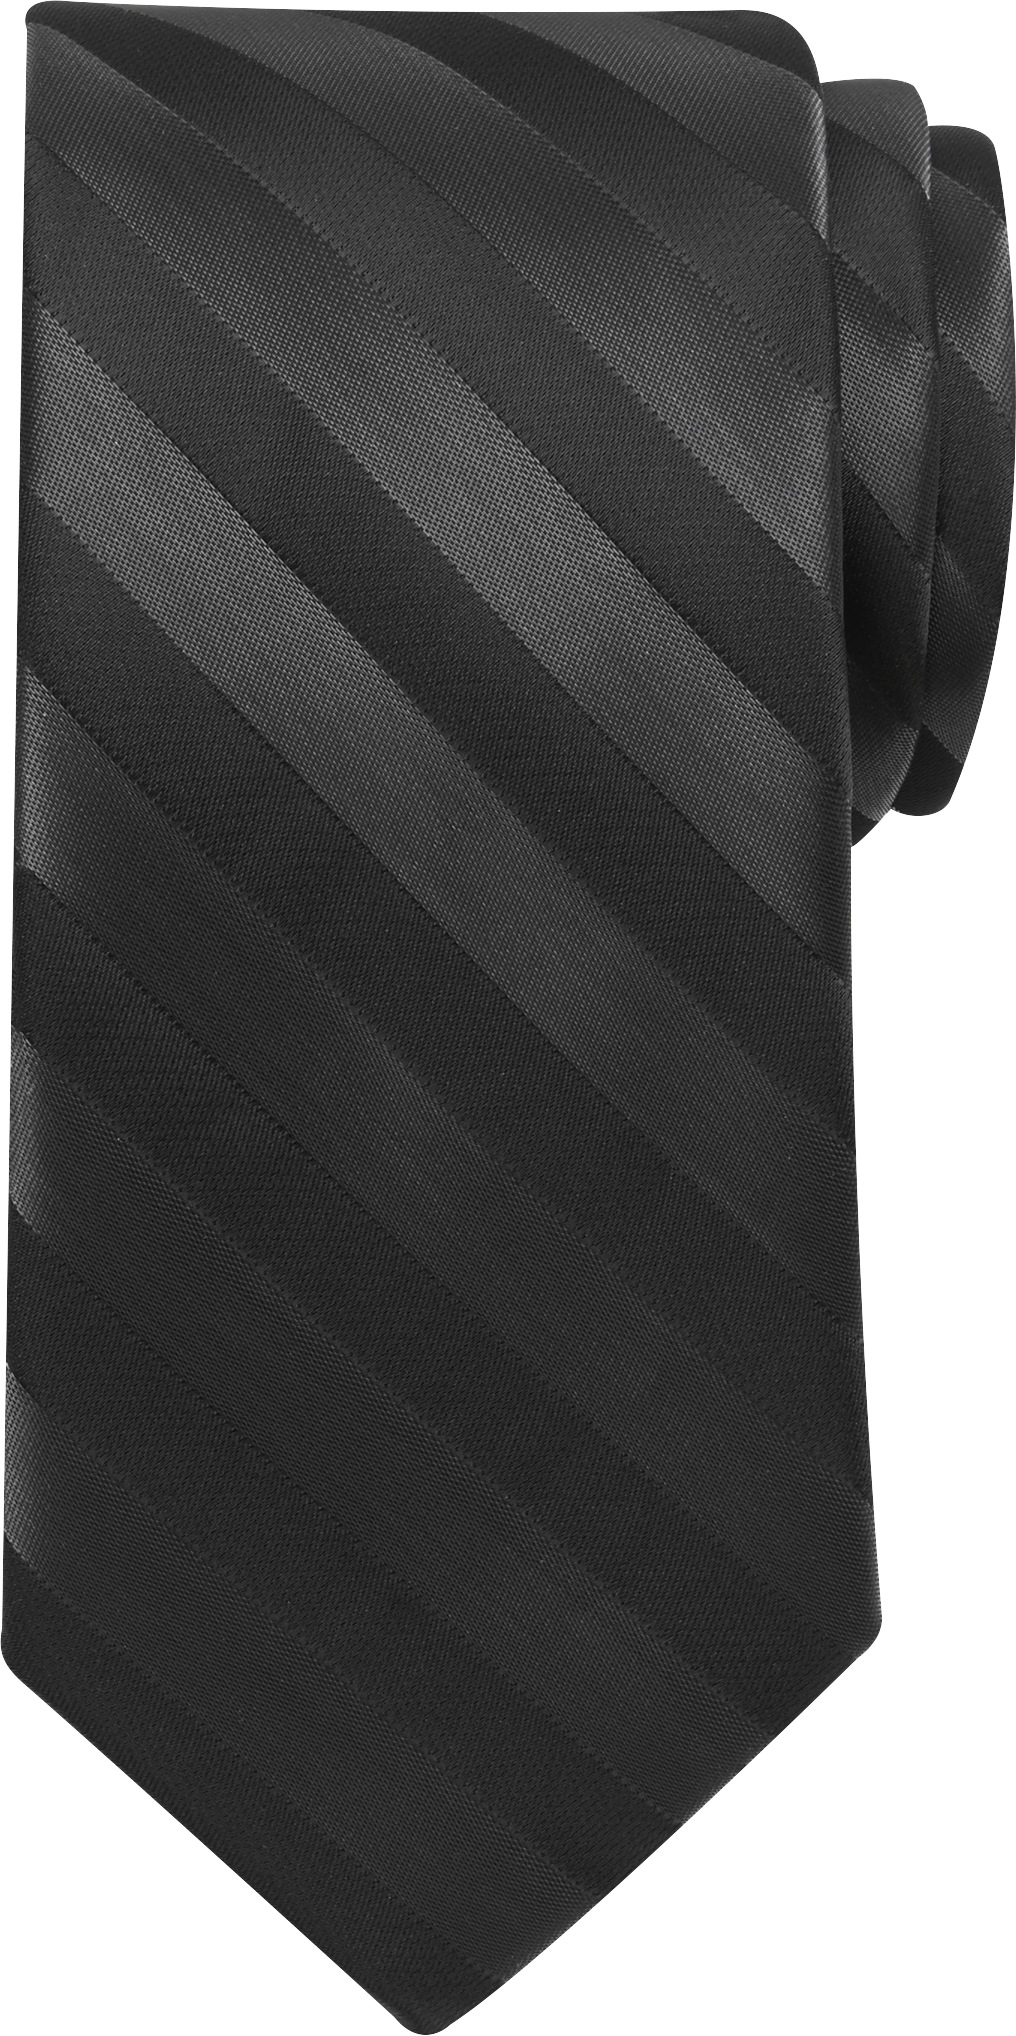 Narrow Stripe Tie